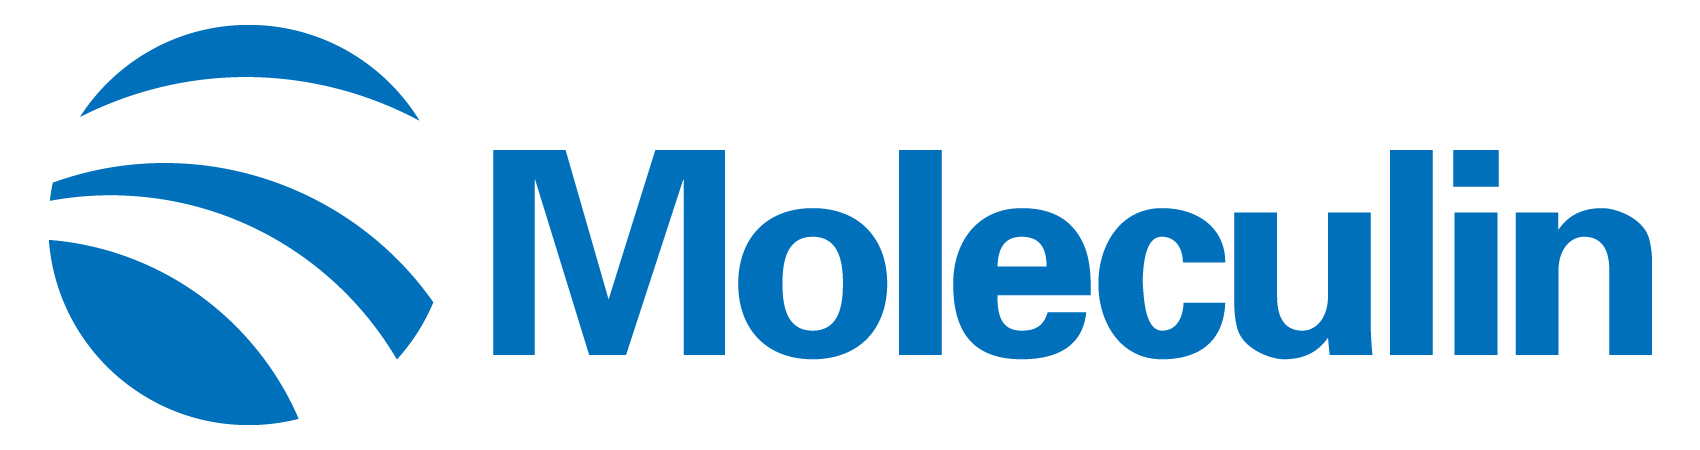 moleculin-logo_horiza28.jpg